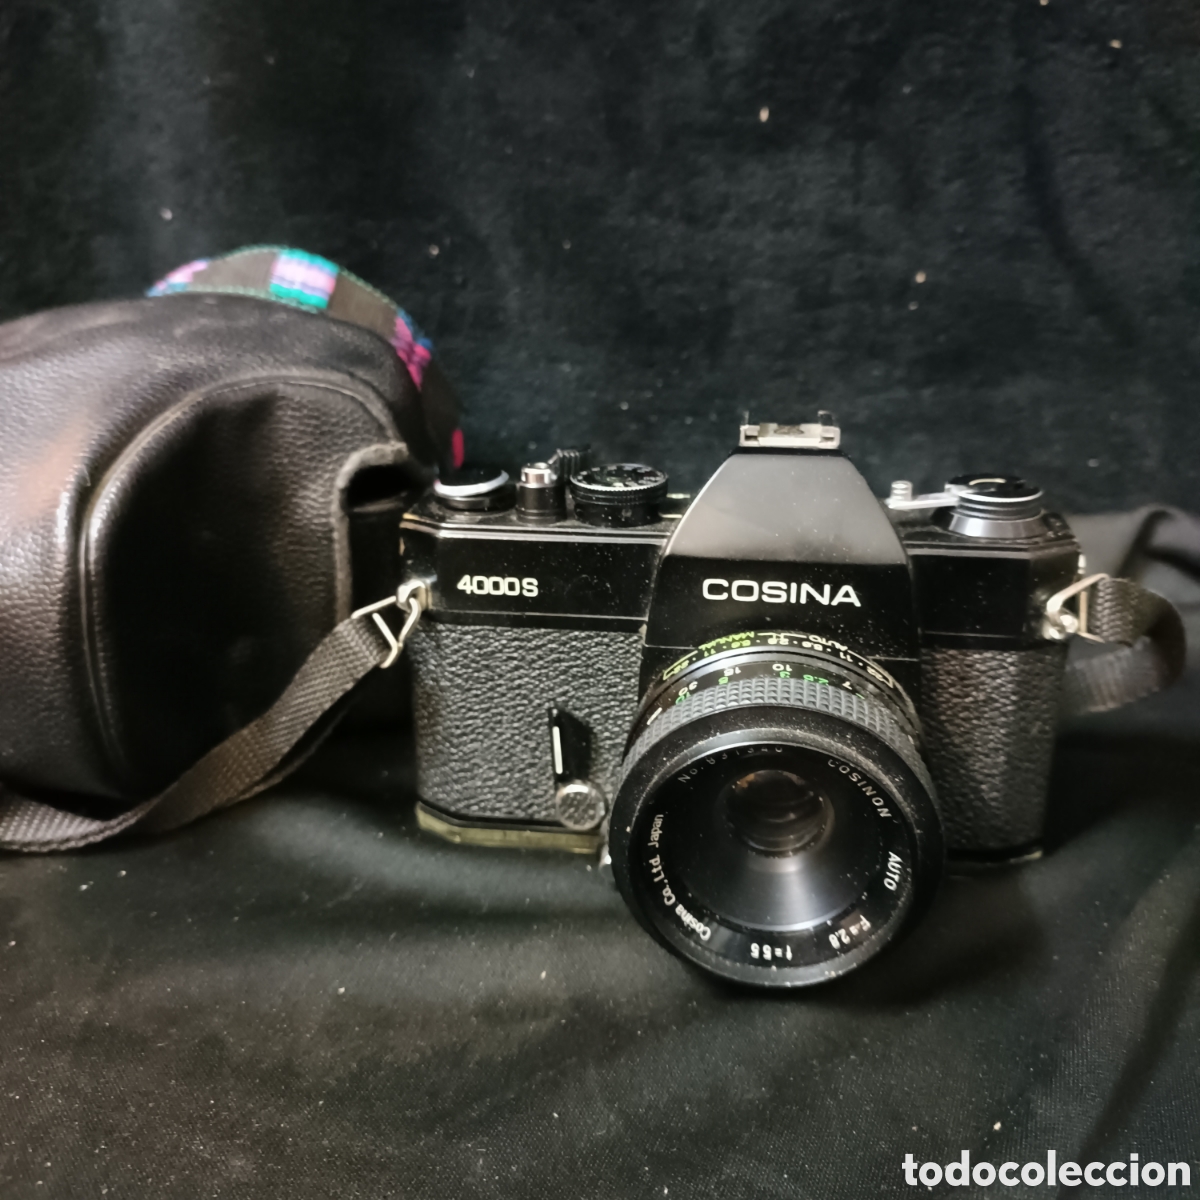 Cosina 4000S - Camera